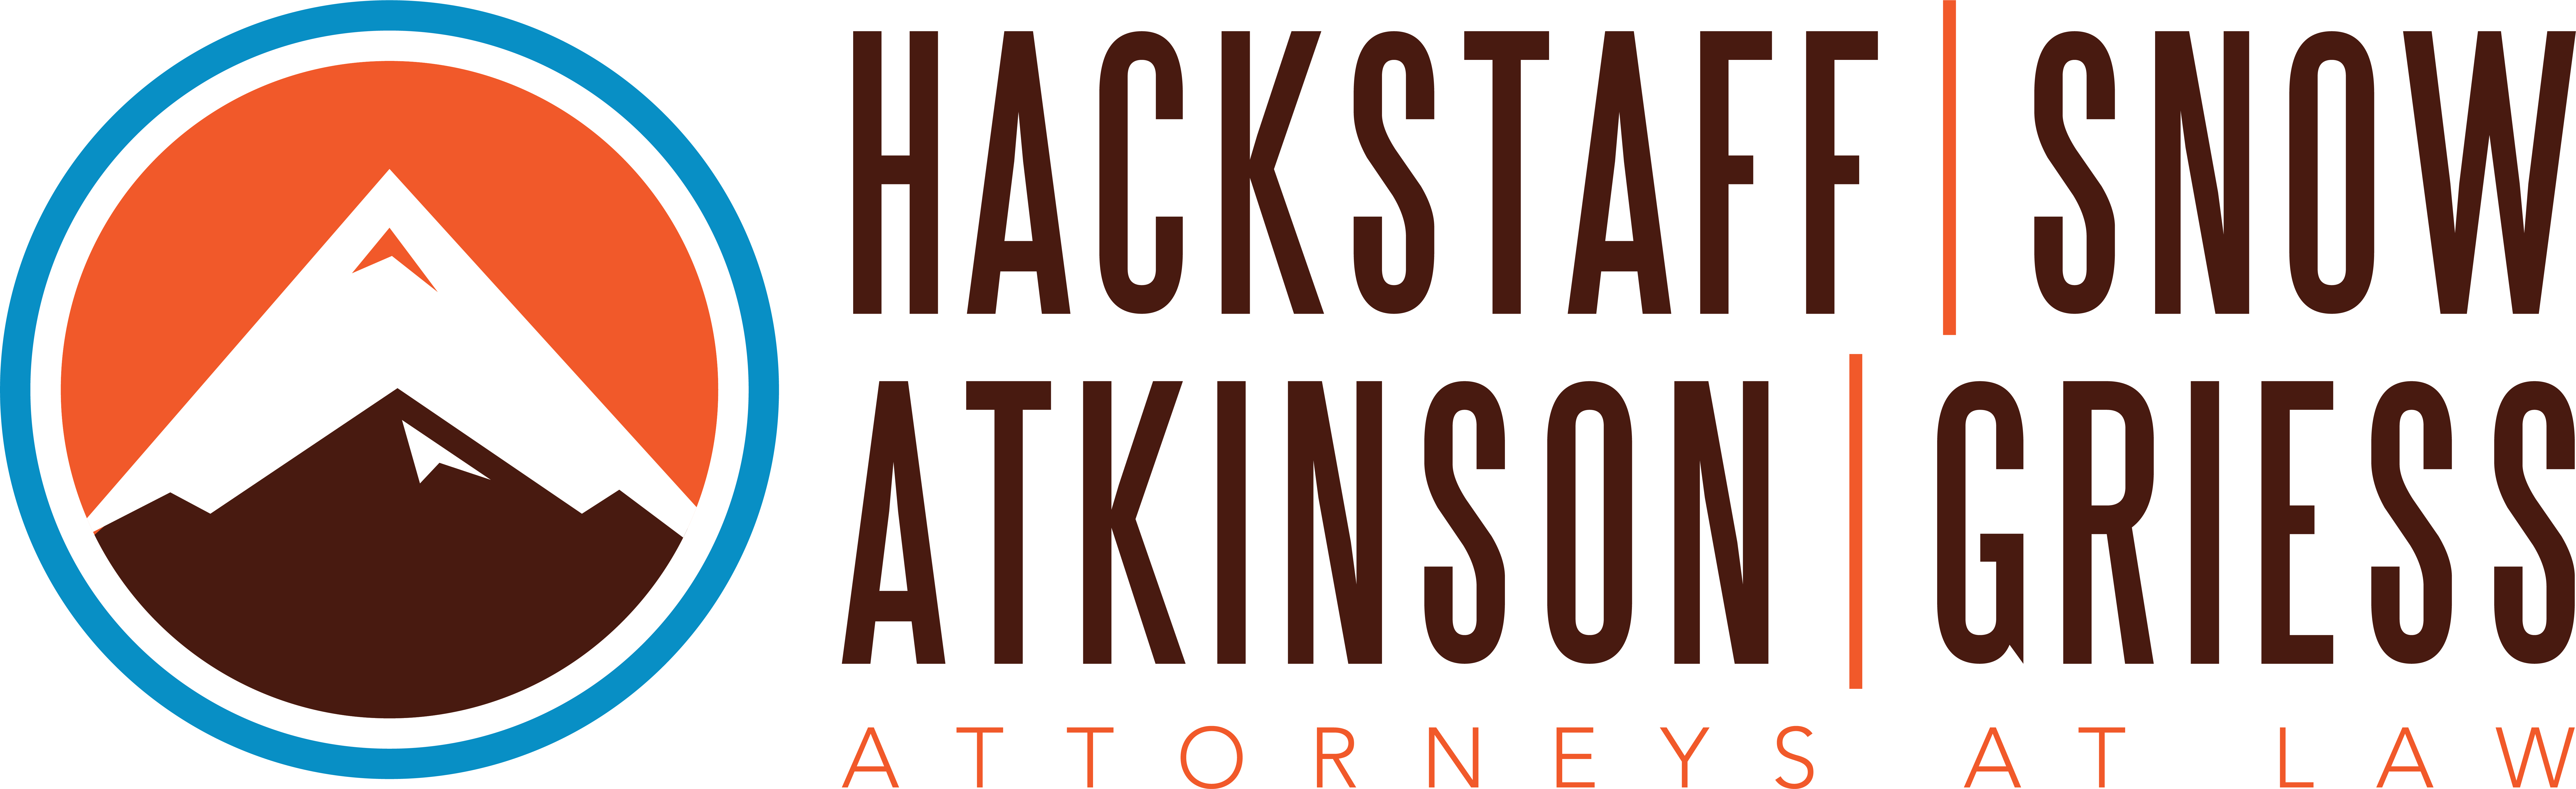 Hackstaff Snow Atkinson Griess LLC.